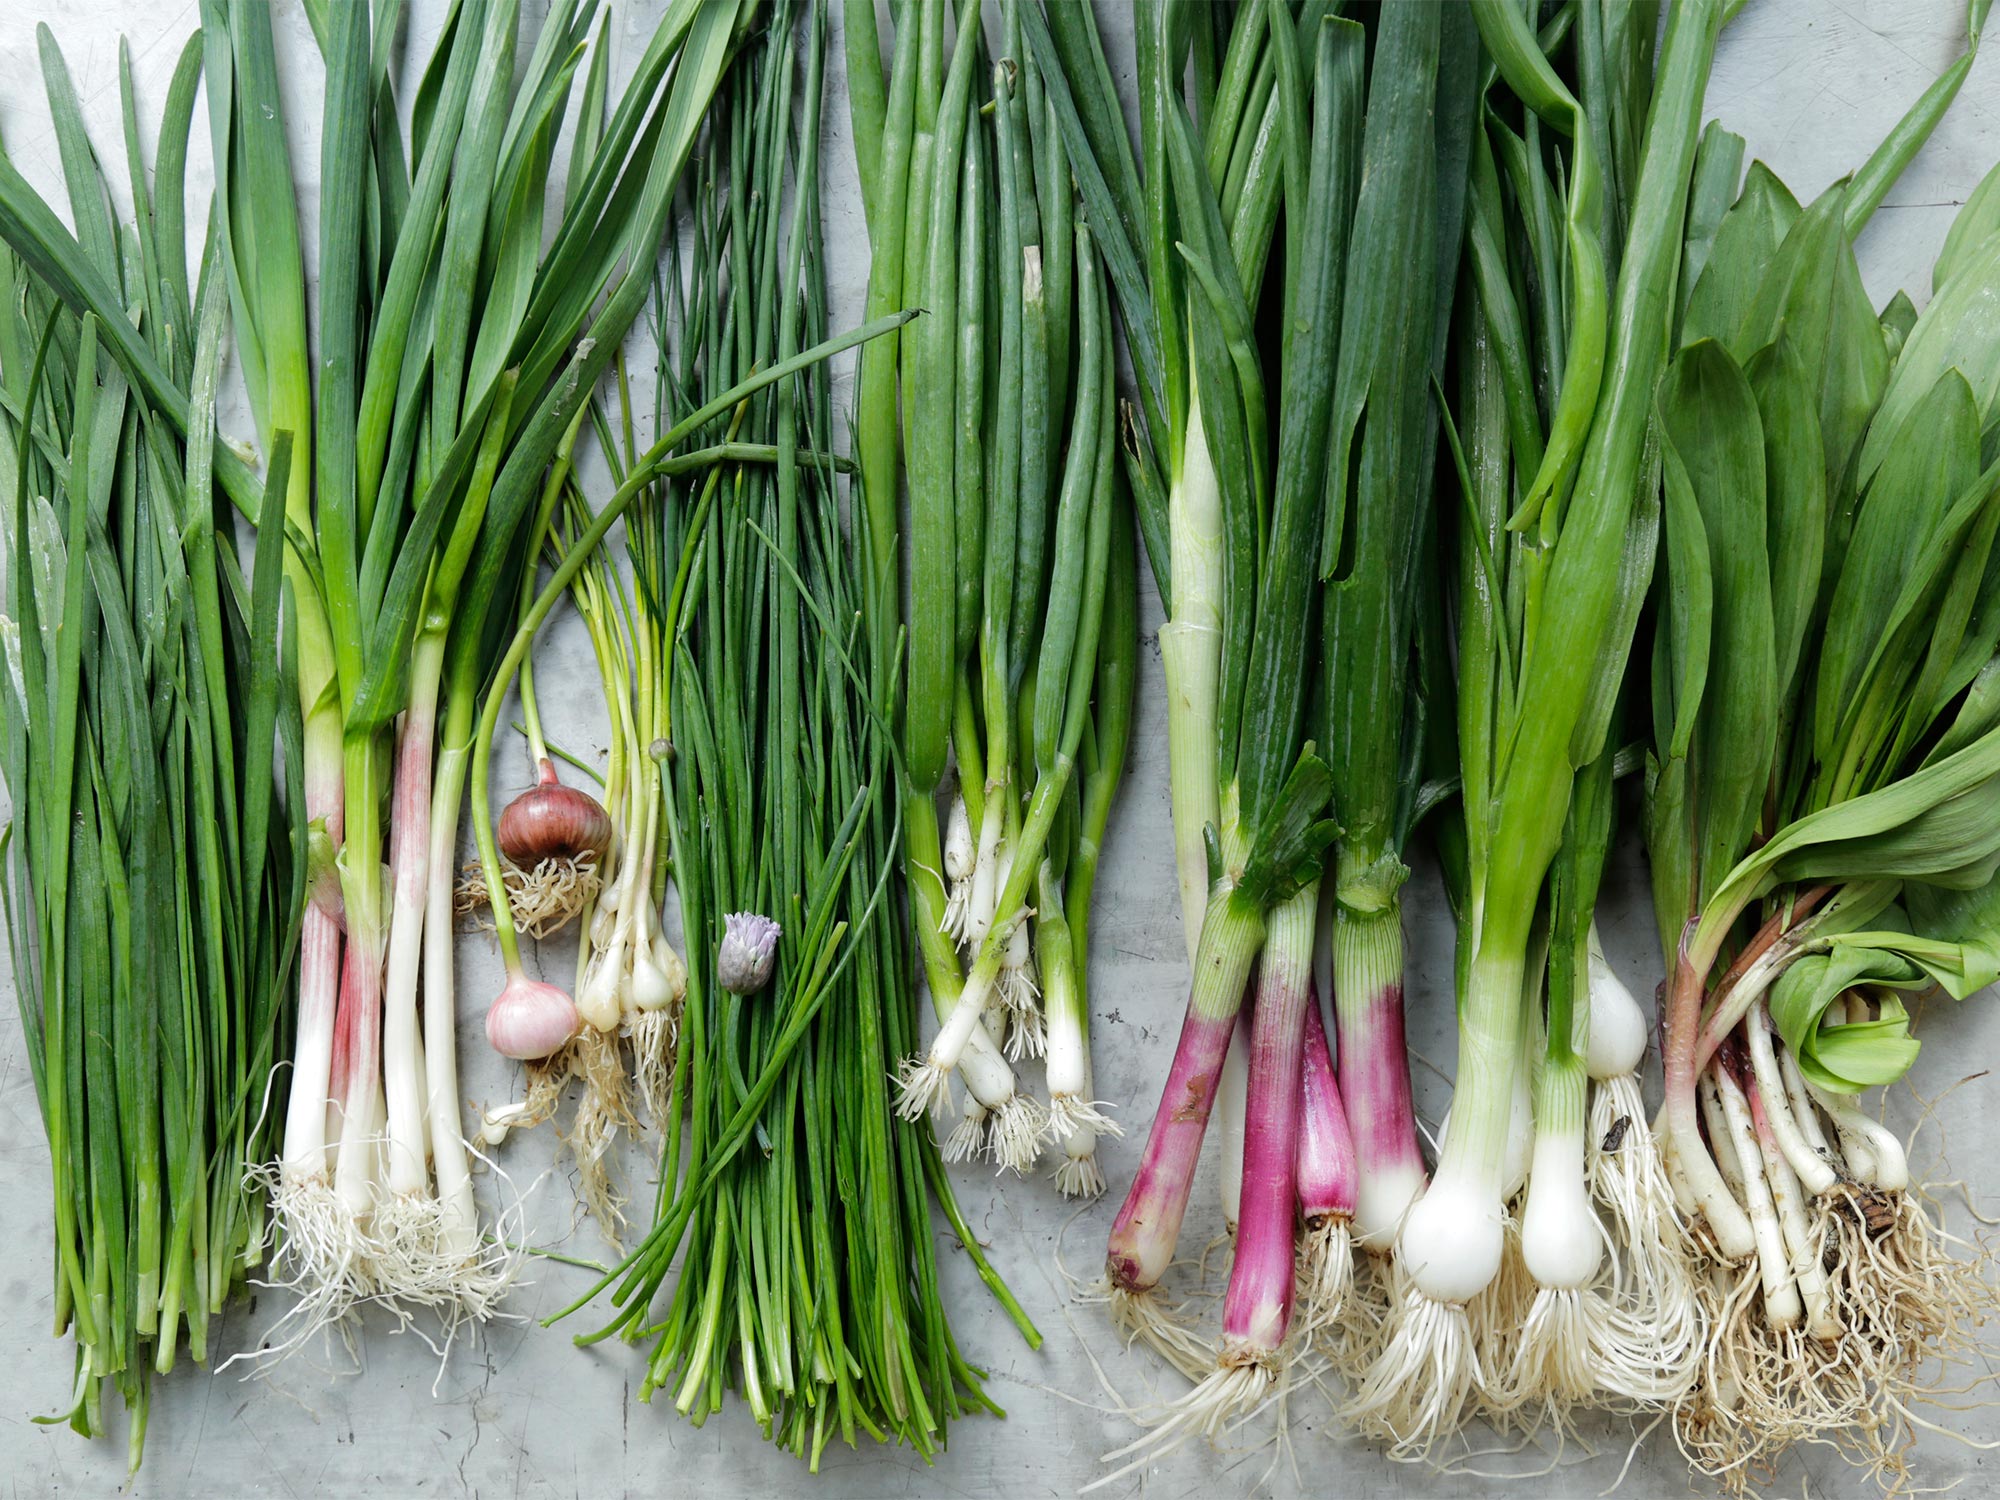 Shallots vs Green Onions - The Harvest Kitchen